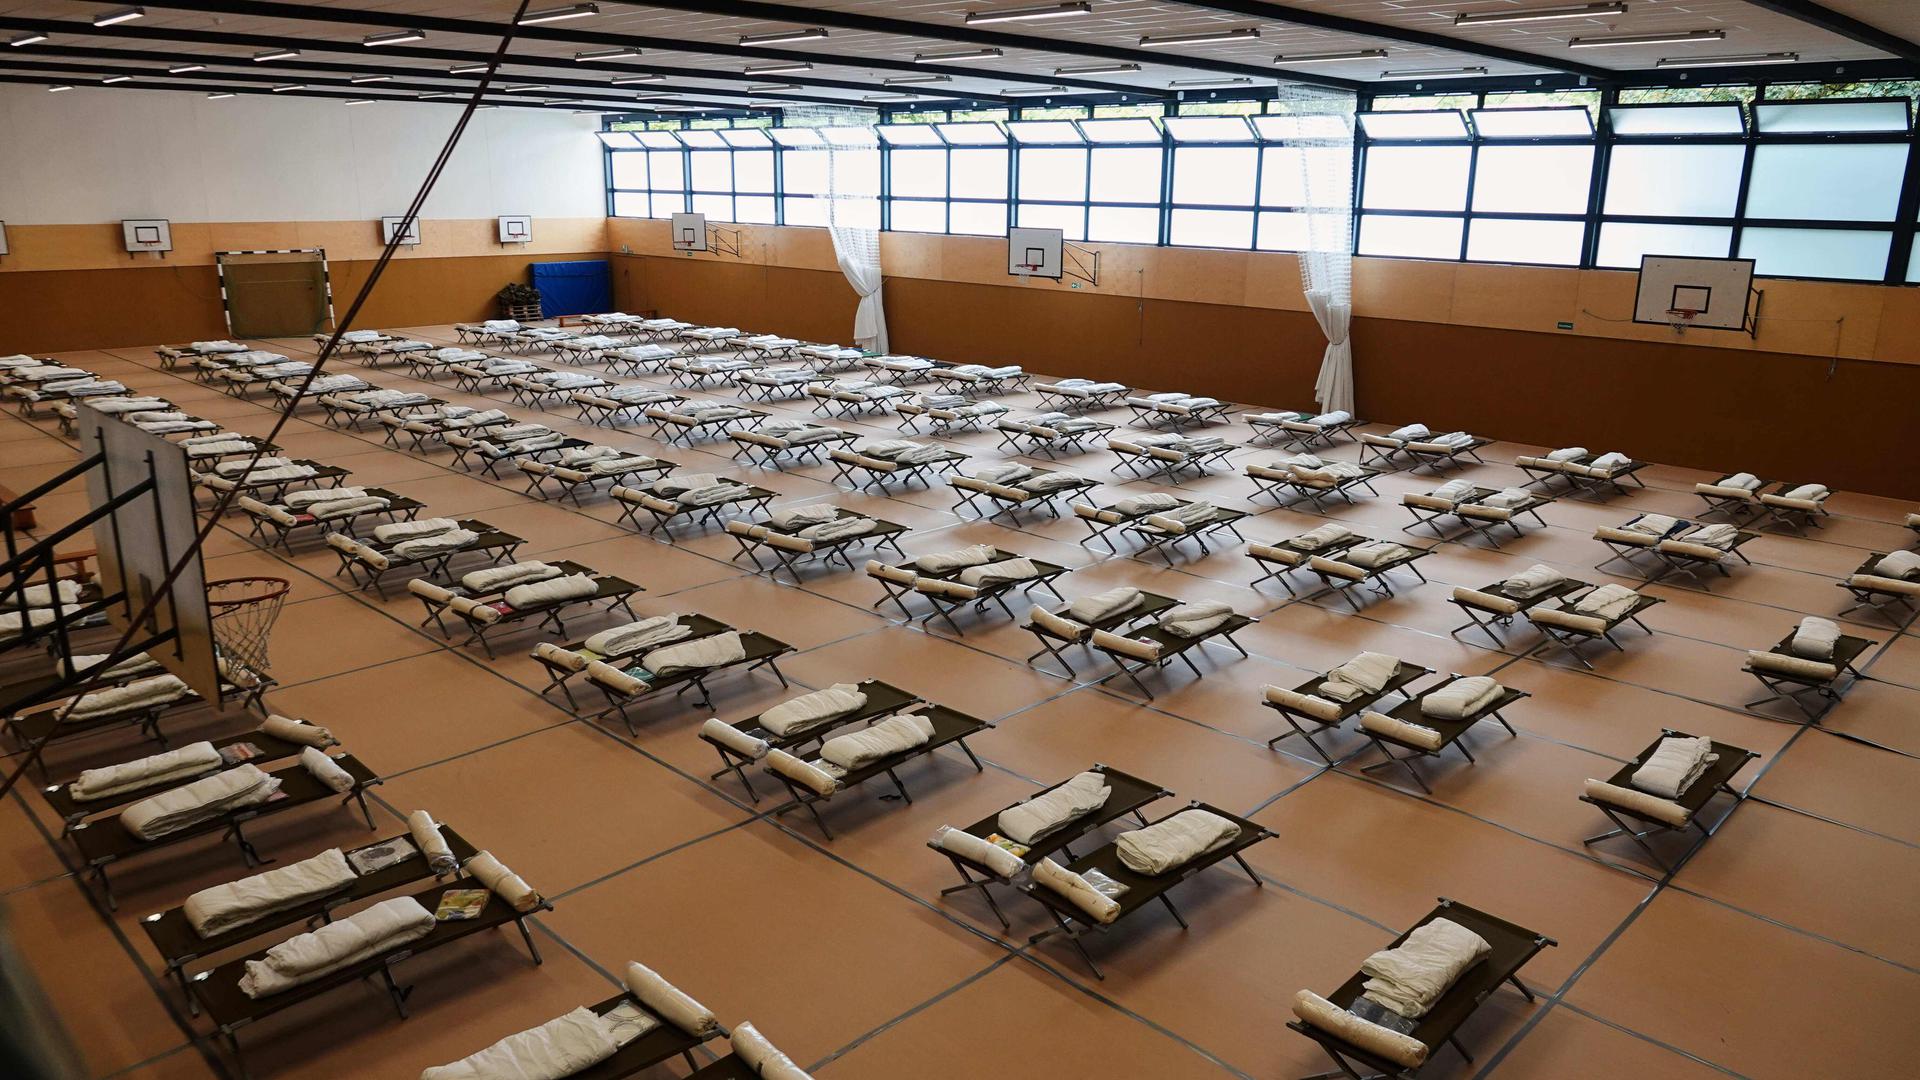 Feldbetten stehen in einer Notunterkunft für ukrainische Flüchtlinge. Die erste von insgesamt fünf Unterkunft mit je 150 Betten wurde in der Sporthalle der Beruflichen Schule Fahrzeugtechnik eingerichtet. (zu dpa «Bis Jahresende mindestens 2000 neue Plätze für Flüchtlinge in Hamburg») +++ dpa-Bildfunk +++